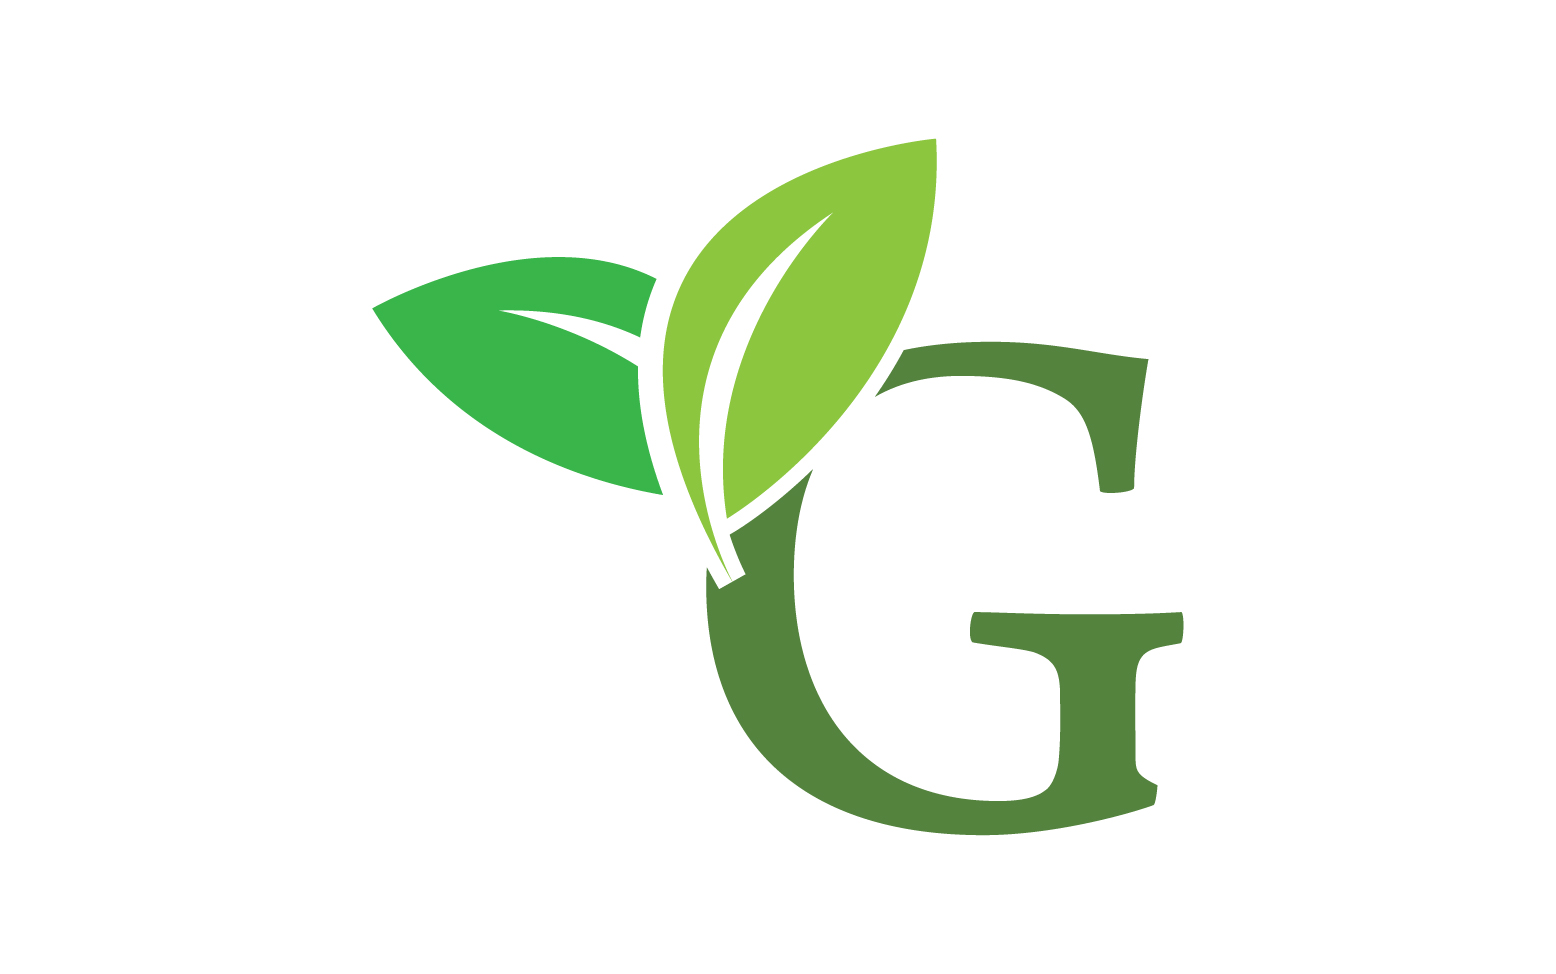 G letter leaf green logo icon version v52